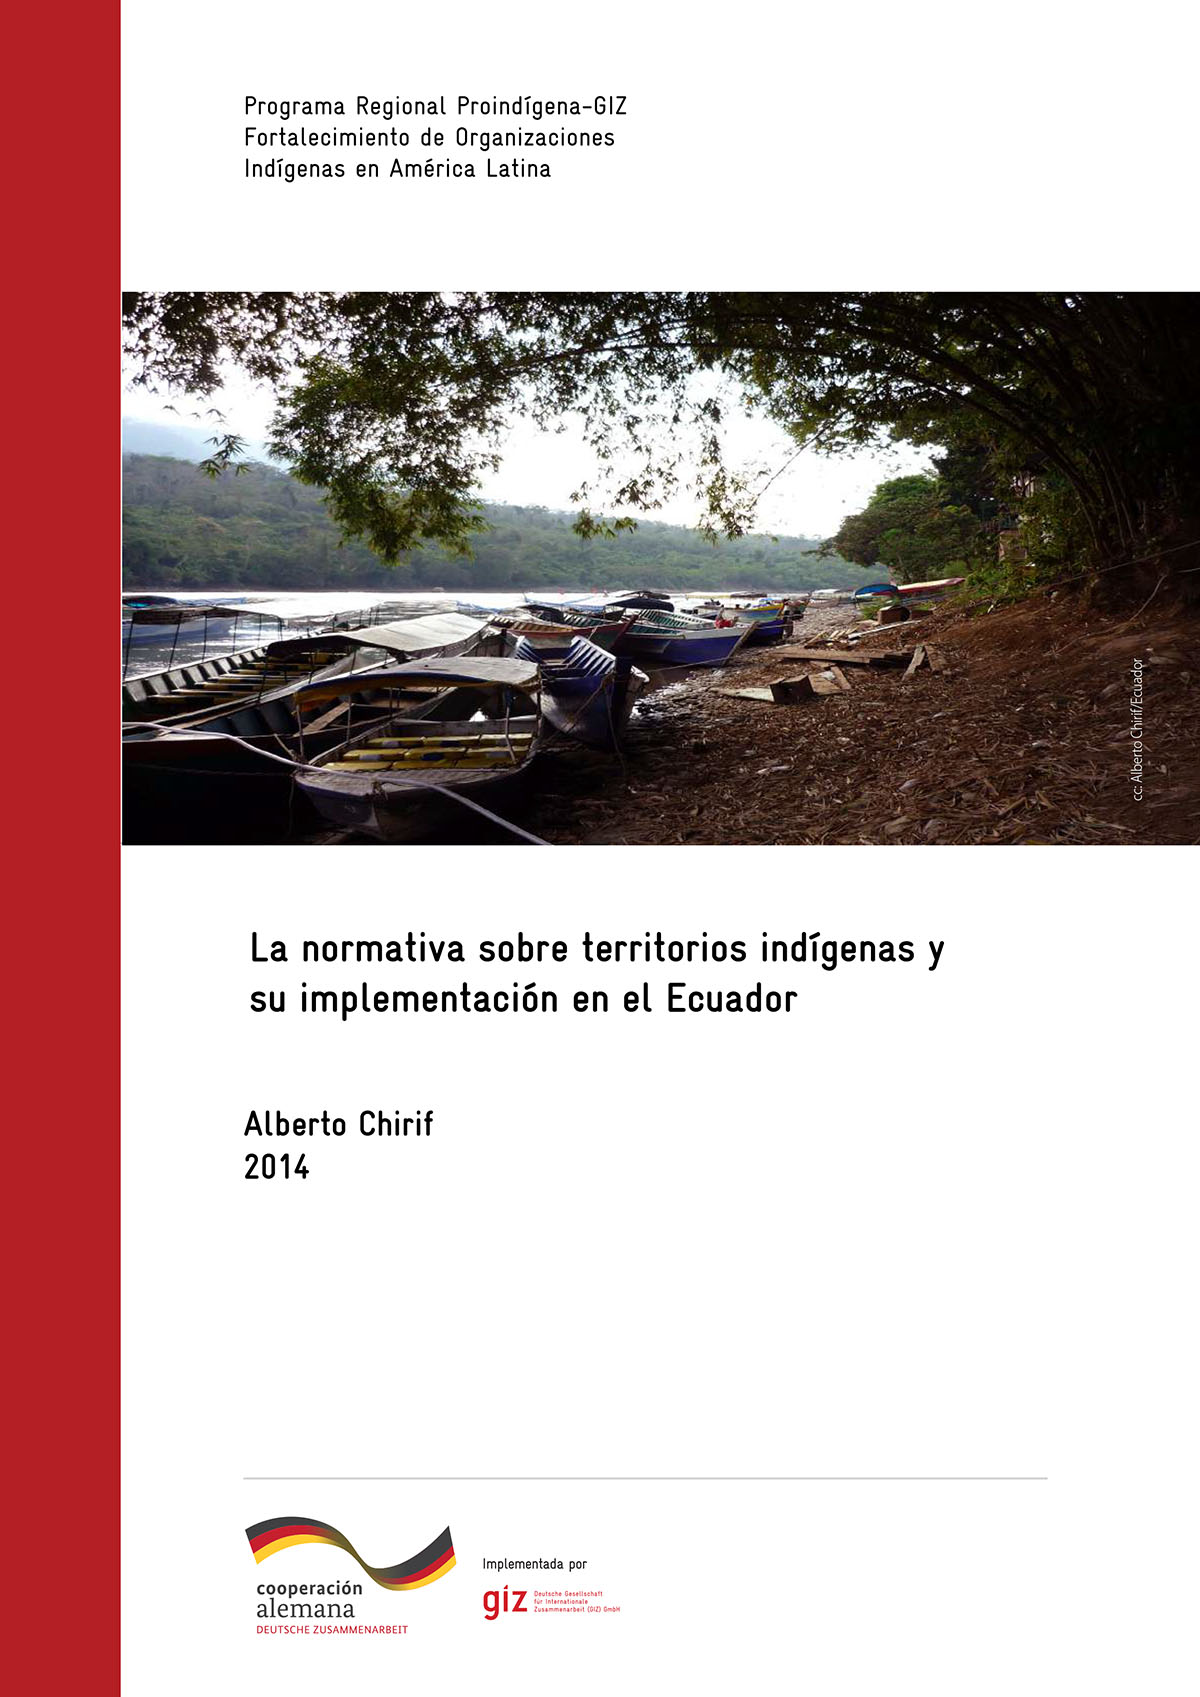 La normativa sobre territorios indígenas y su implementación en Ecuador